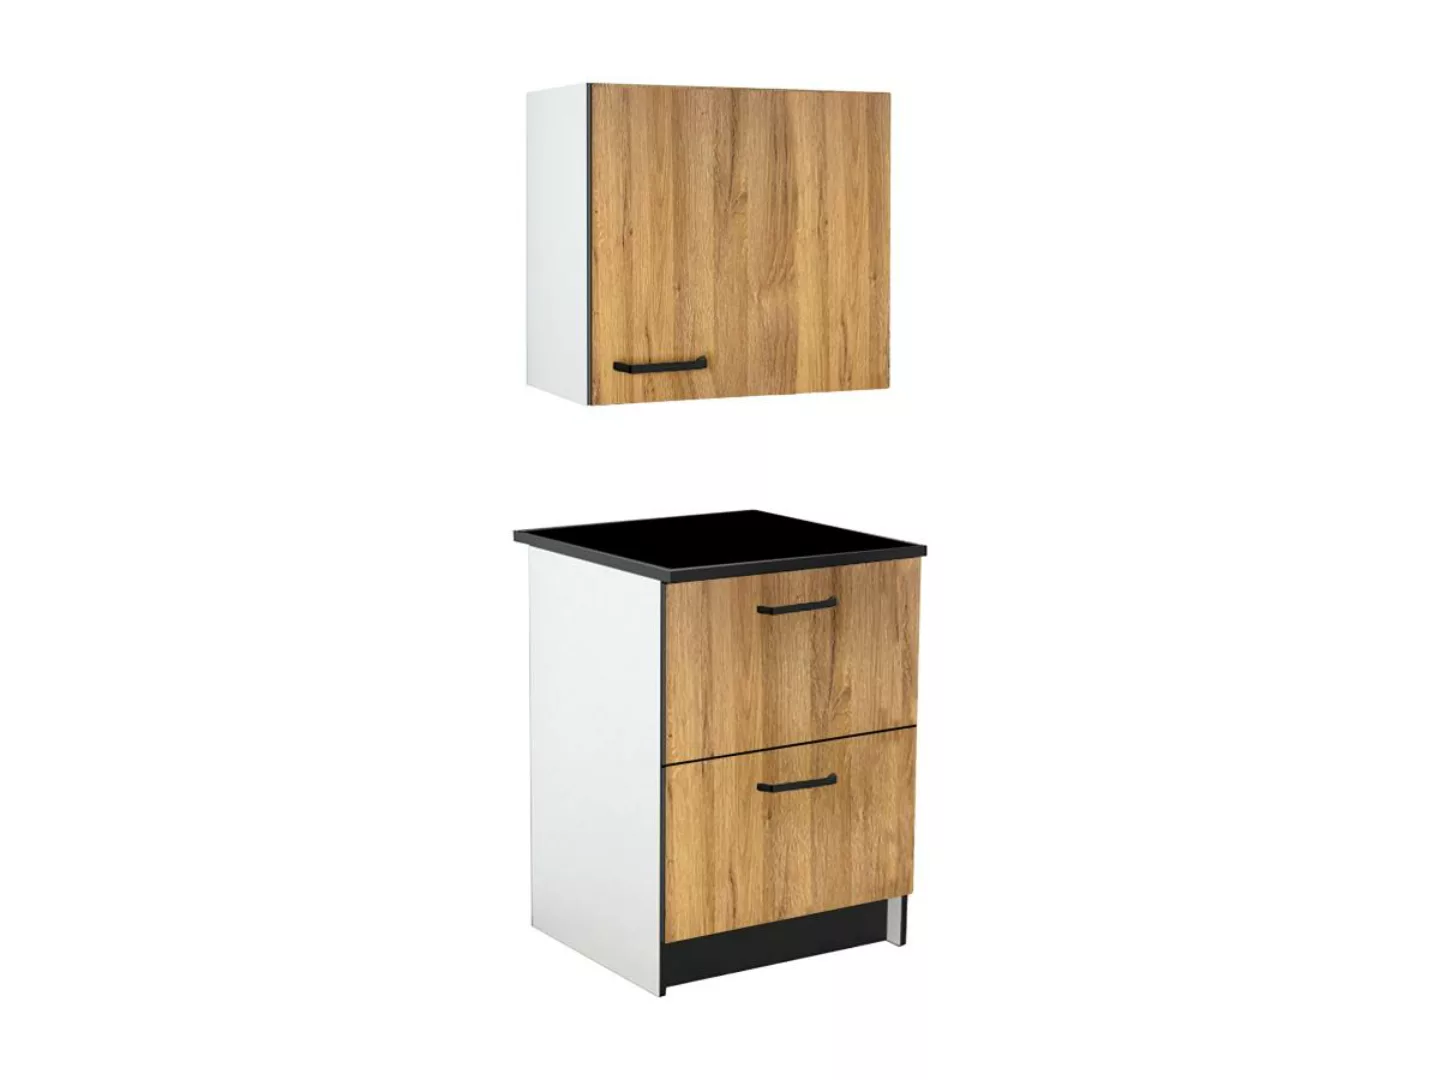 Küchenschränke - 1 Unterschrank & 1 Oberschrank - 2 Schubladen & 1 Tür - Ho günstig online kaufen